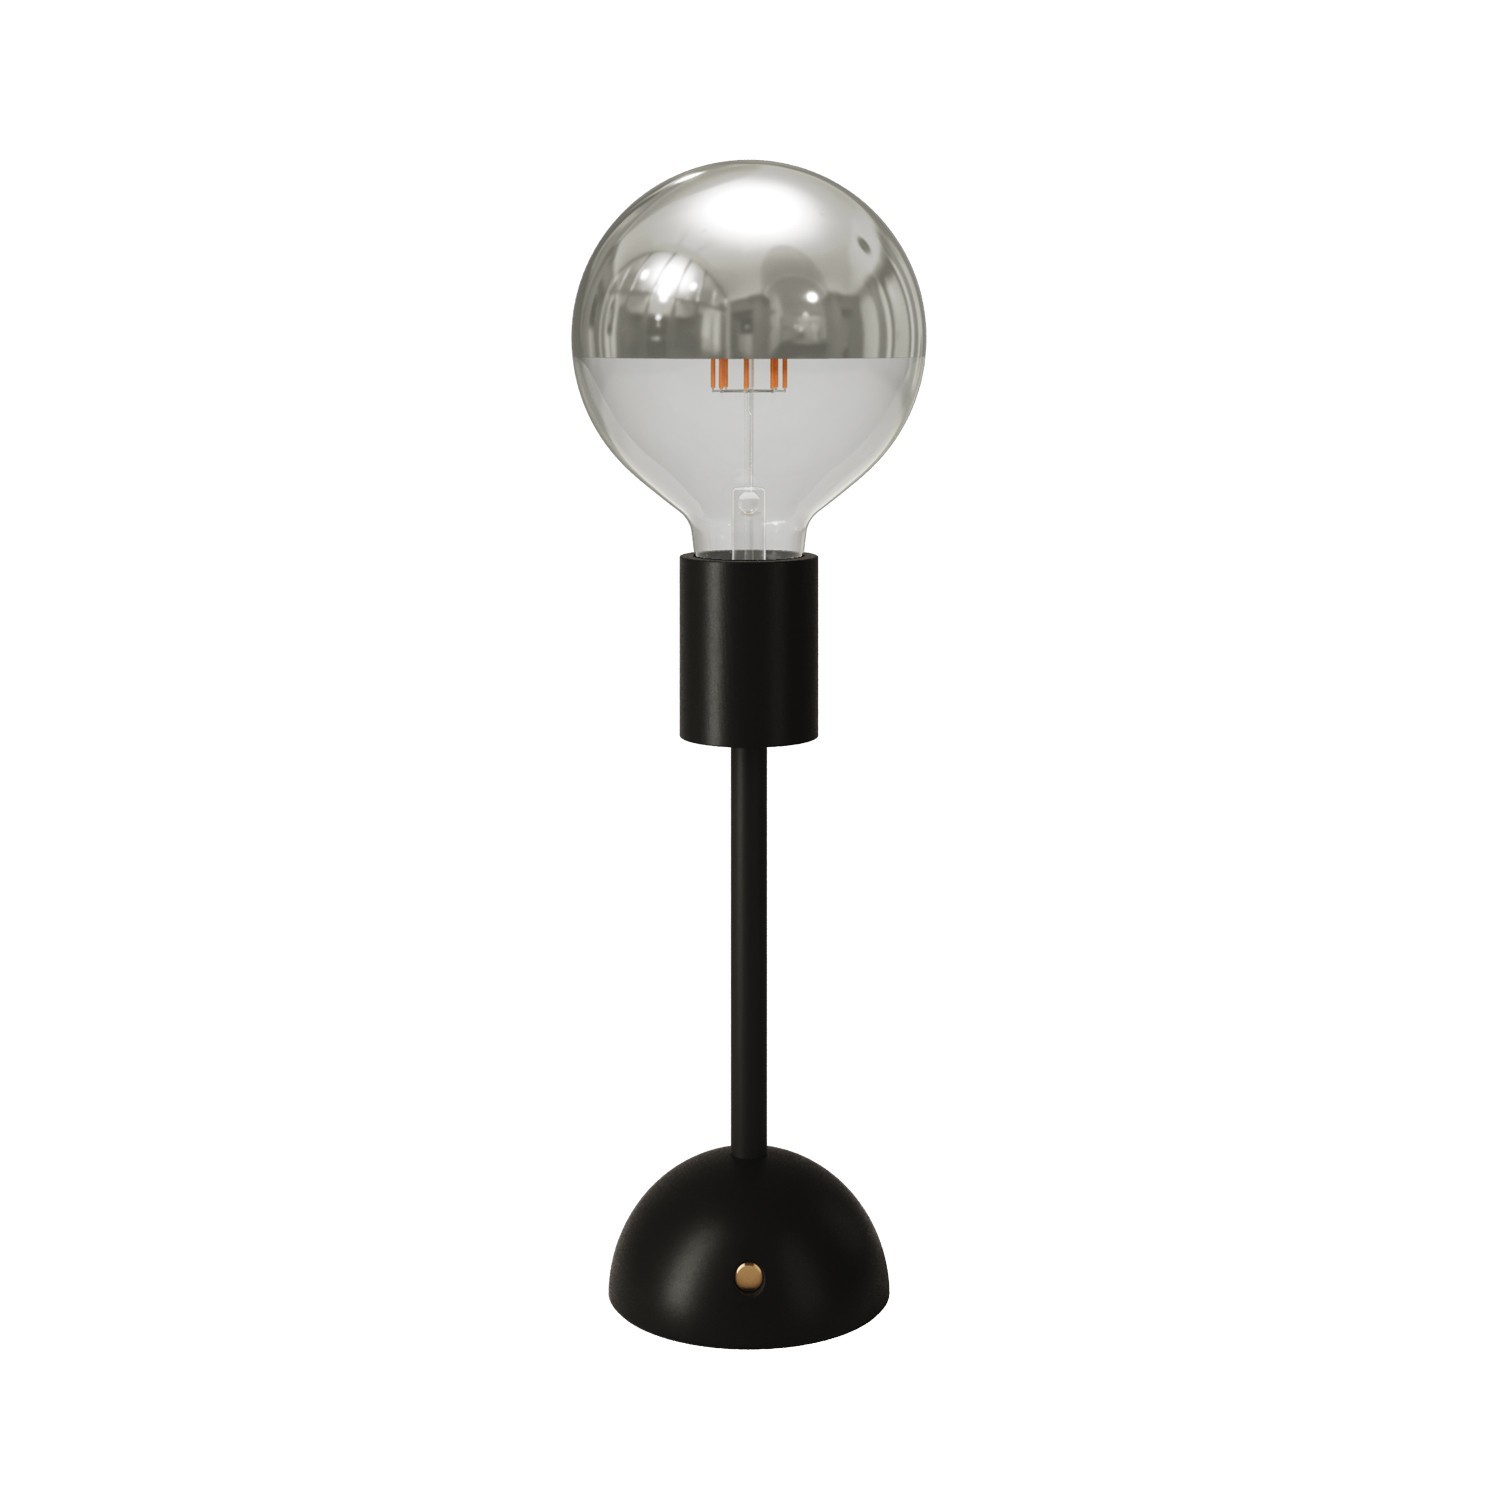 Tragbare, wiederaufladbare Leuchte Cabless02 mit Globe Glühbirne mit silberfarbener Kopfspiegelung